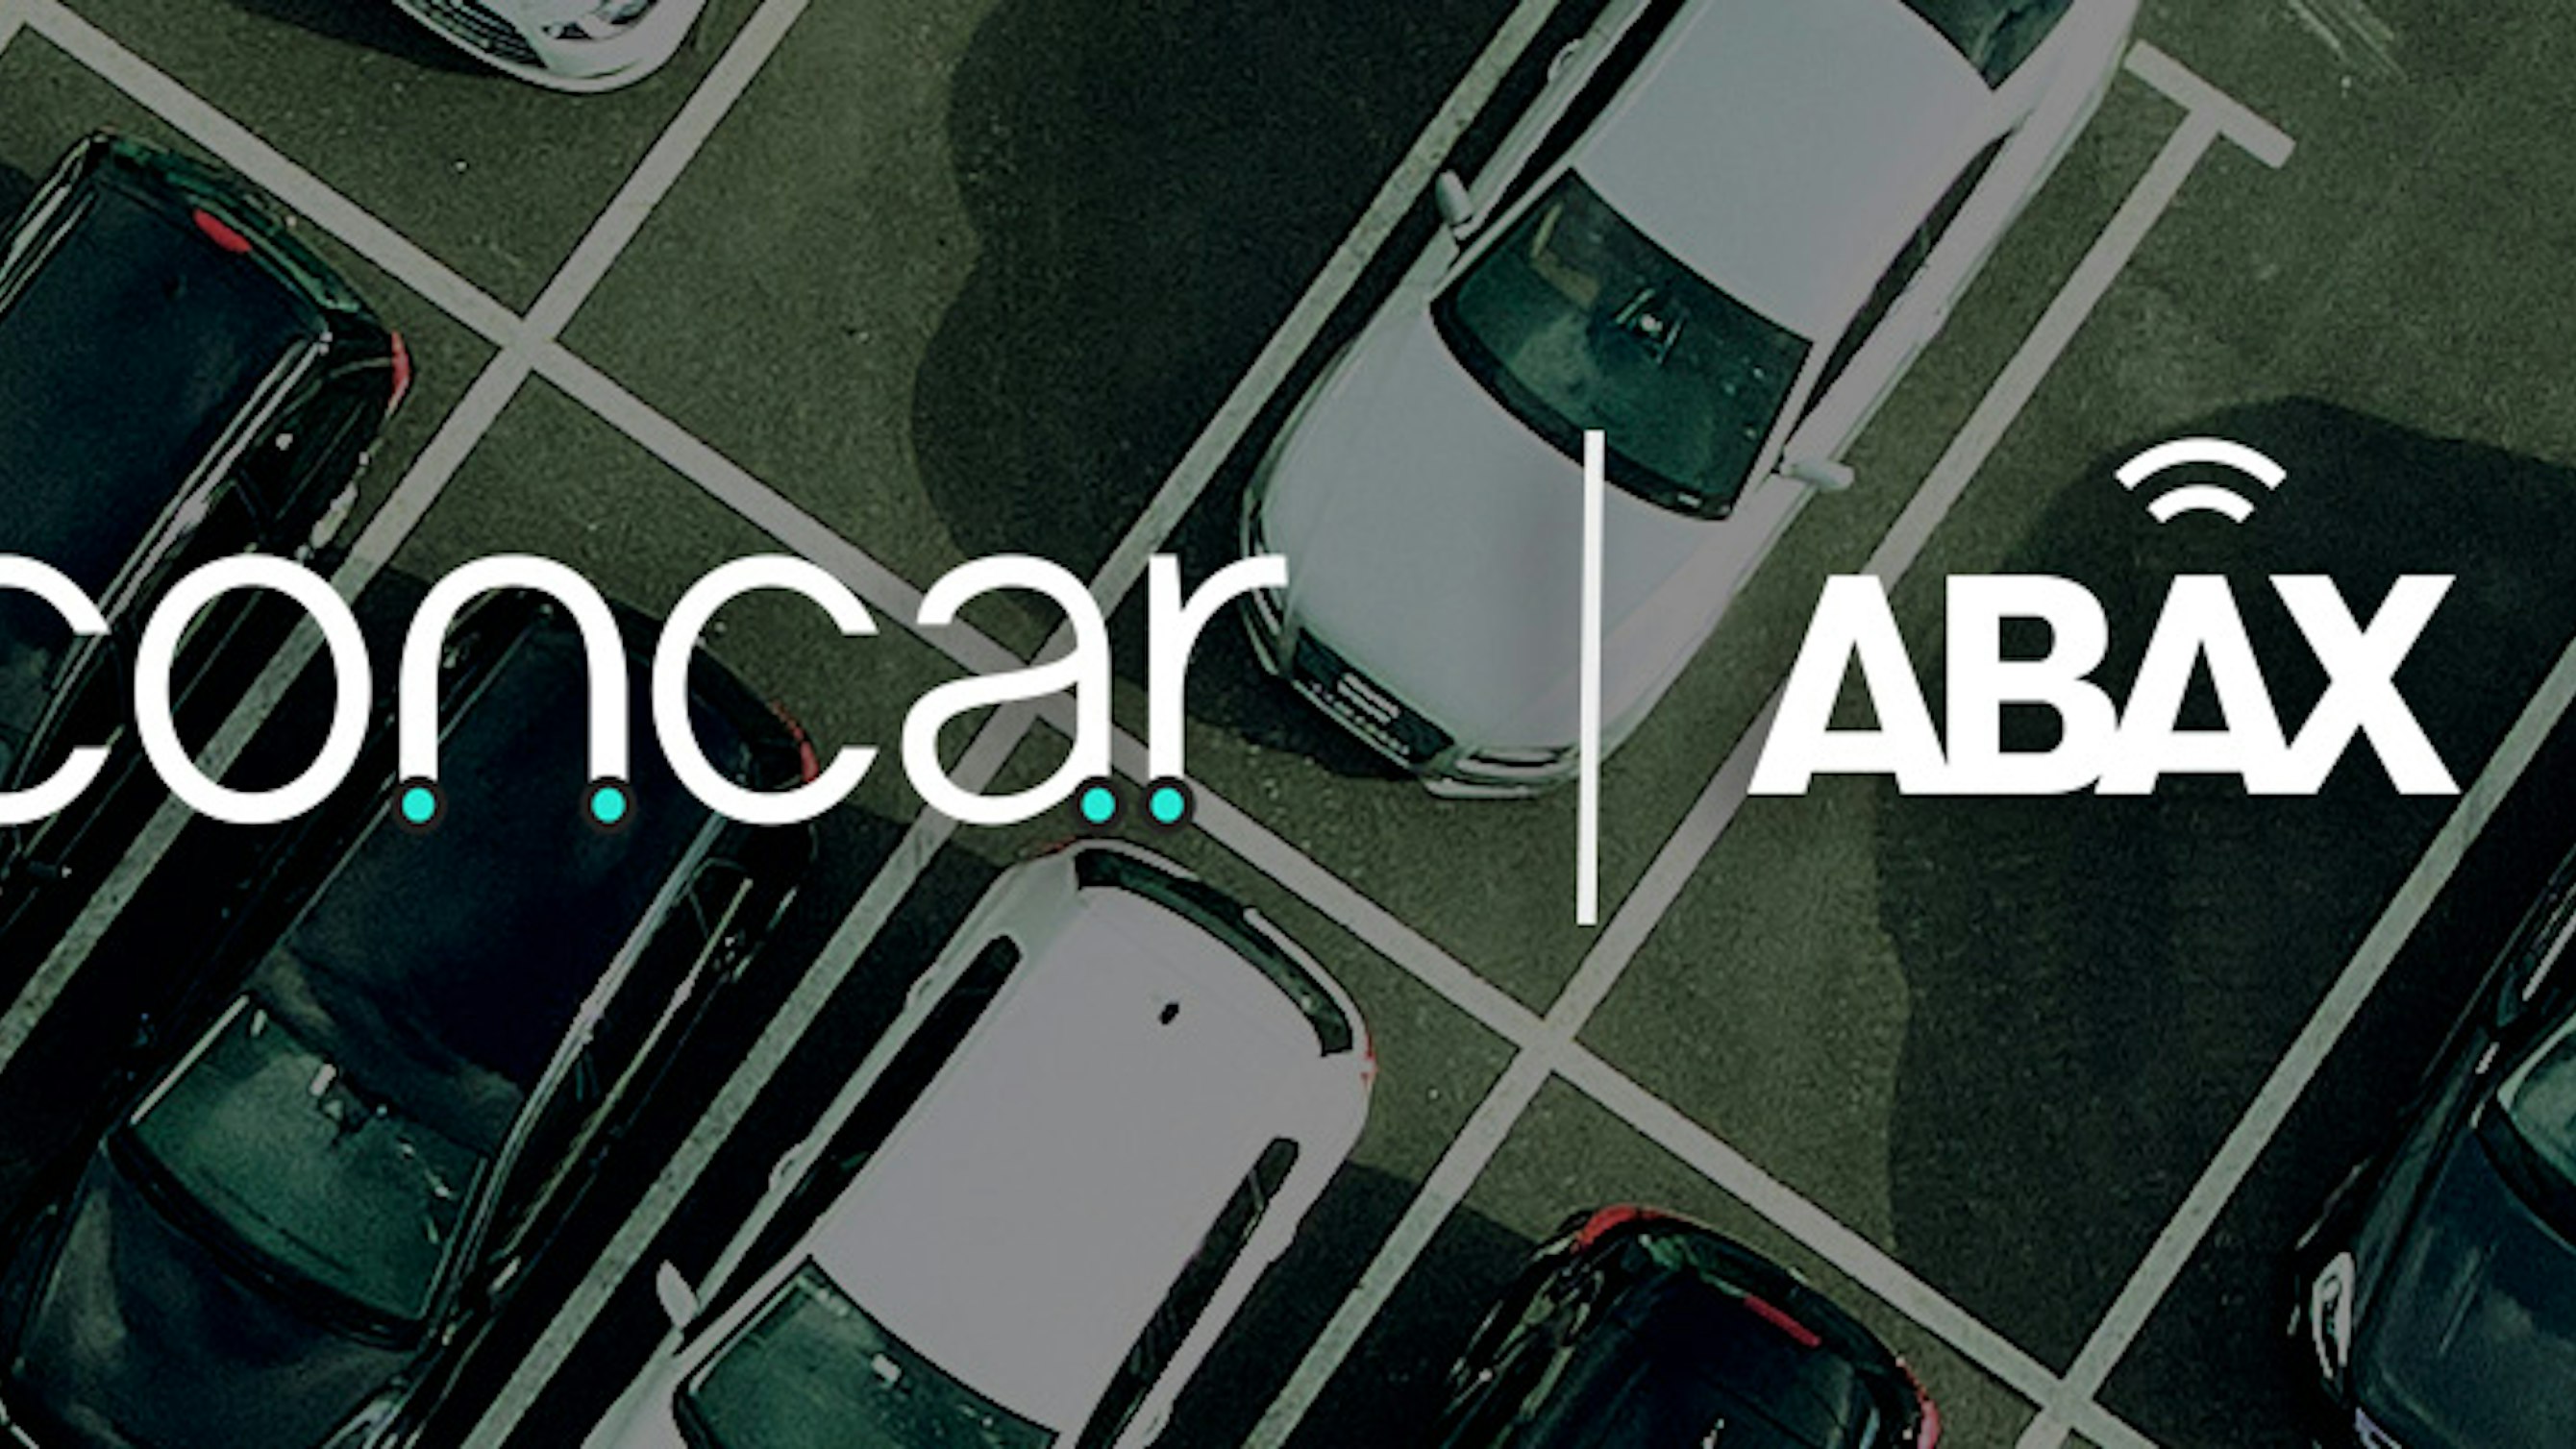 ABAX en Concar automatiseren samen parkeeroplossingen voor wagenparken